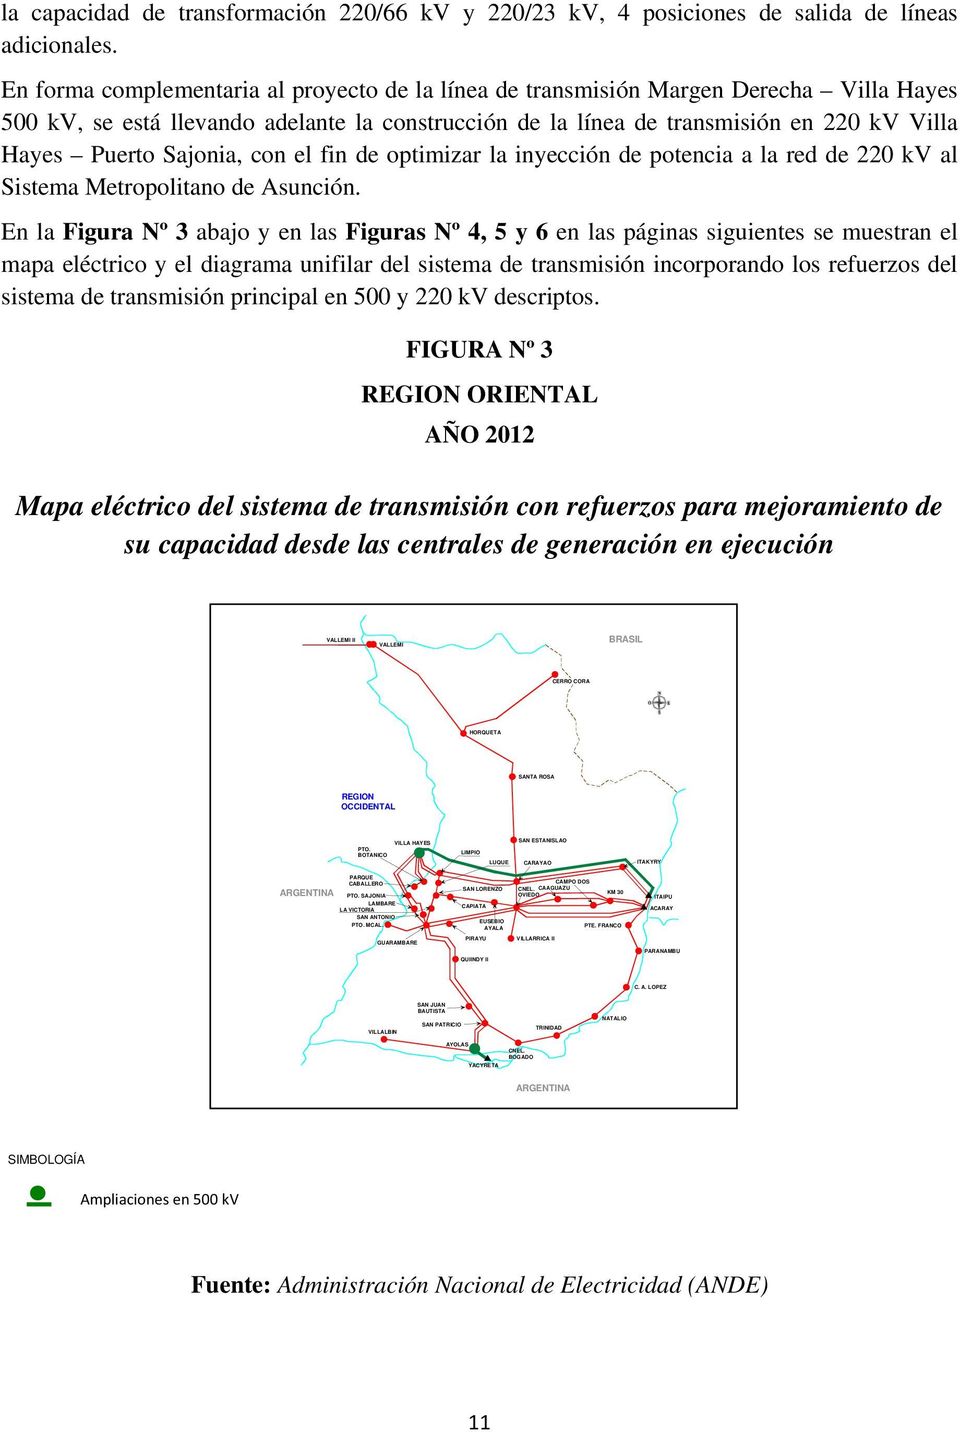 Sajonia, con el fin de optimizar la inyección de potencia a la red de 220 kv al Sistema Metropolitano de Asunción.